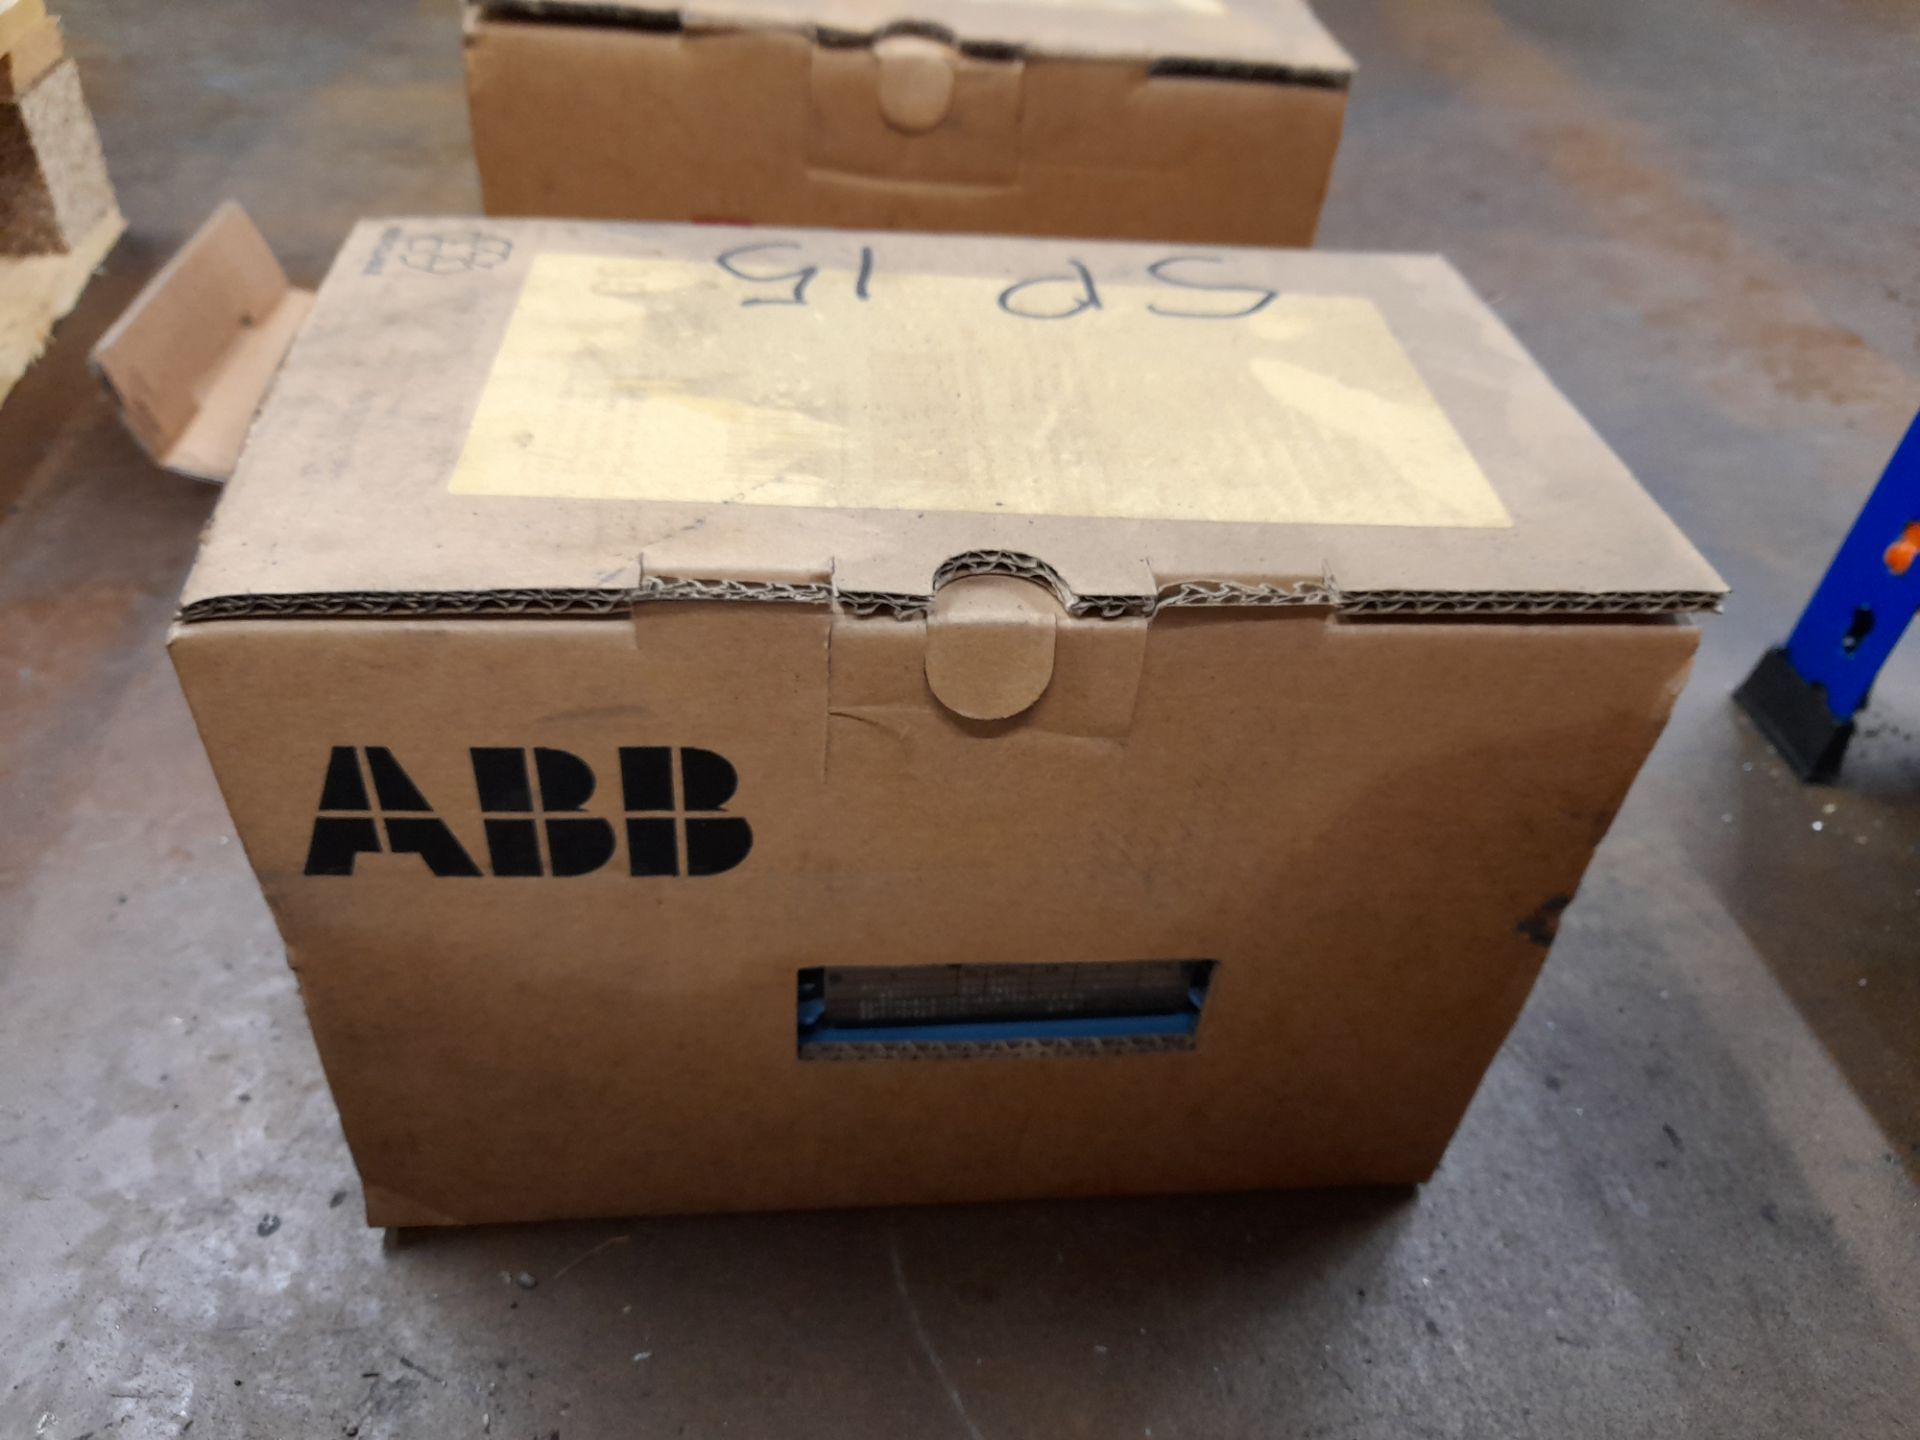 2 x ABB M2AA 080C2 electric motors, with 1 x ABB M3AA 080C2 electric motor (Boxed / unused) - Image 4 of 7